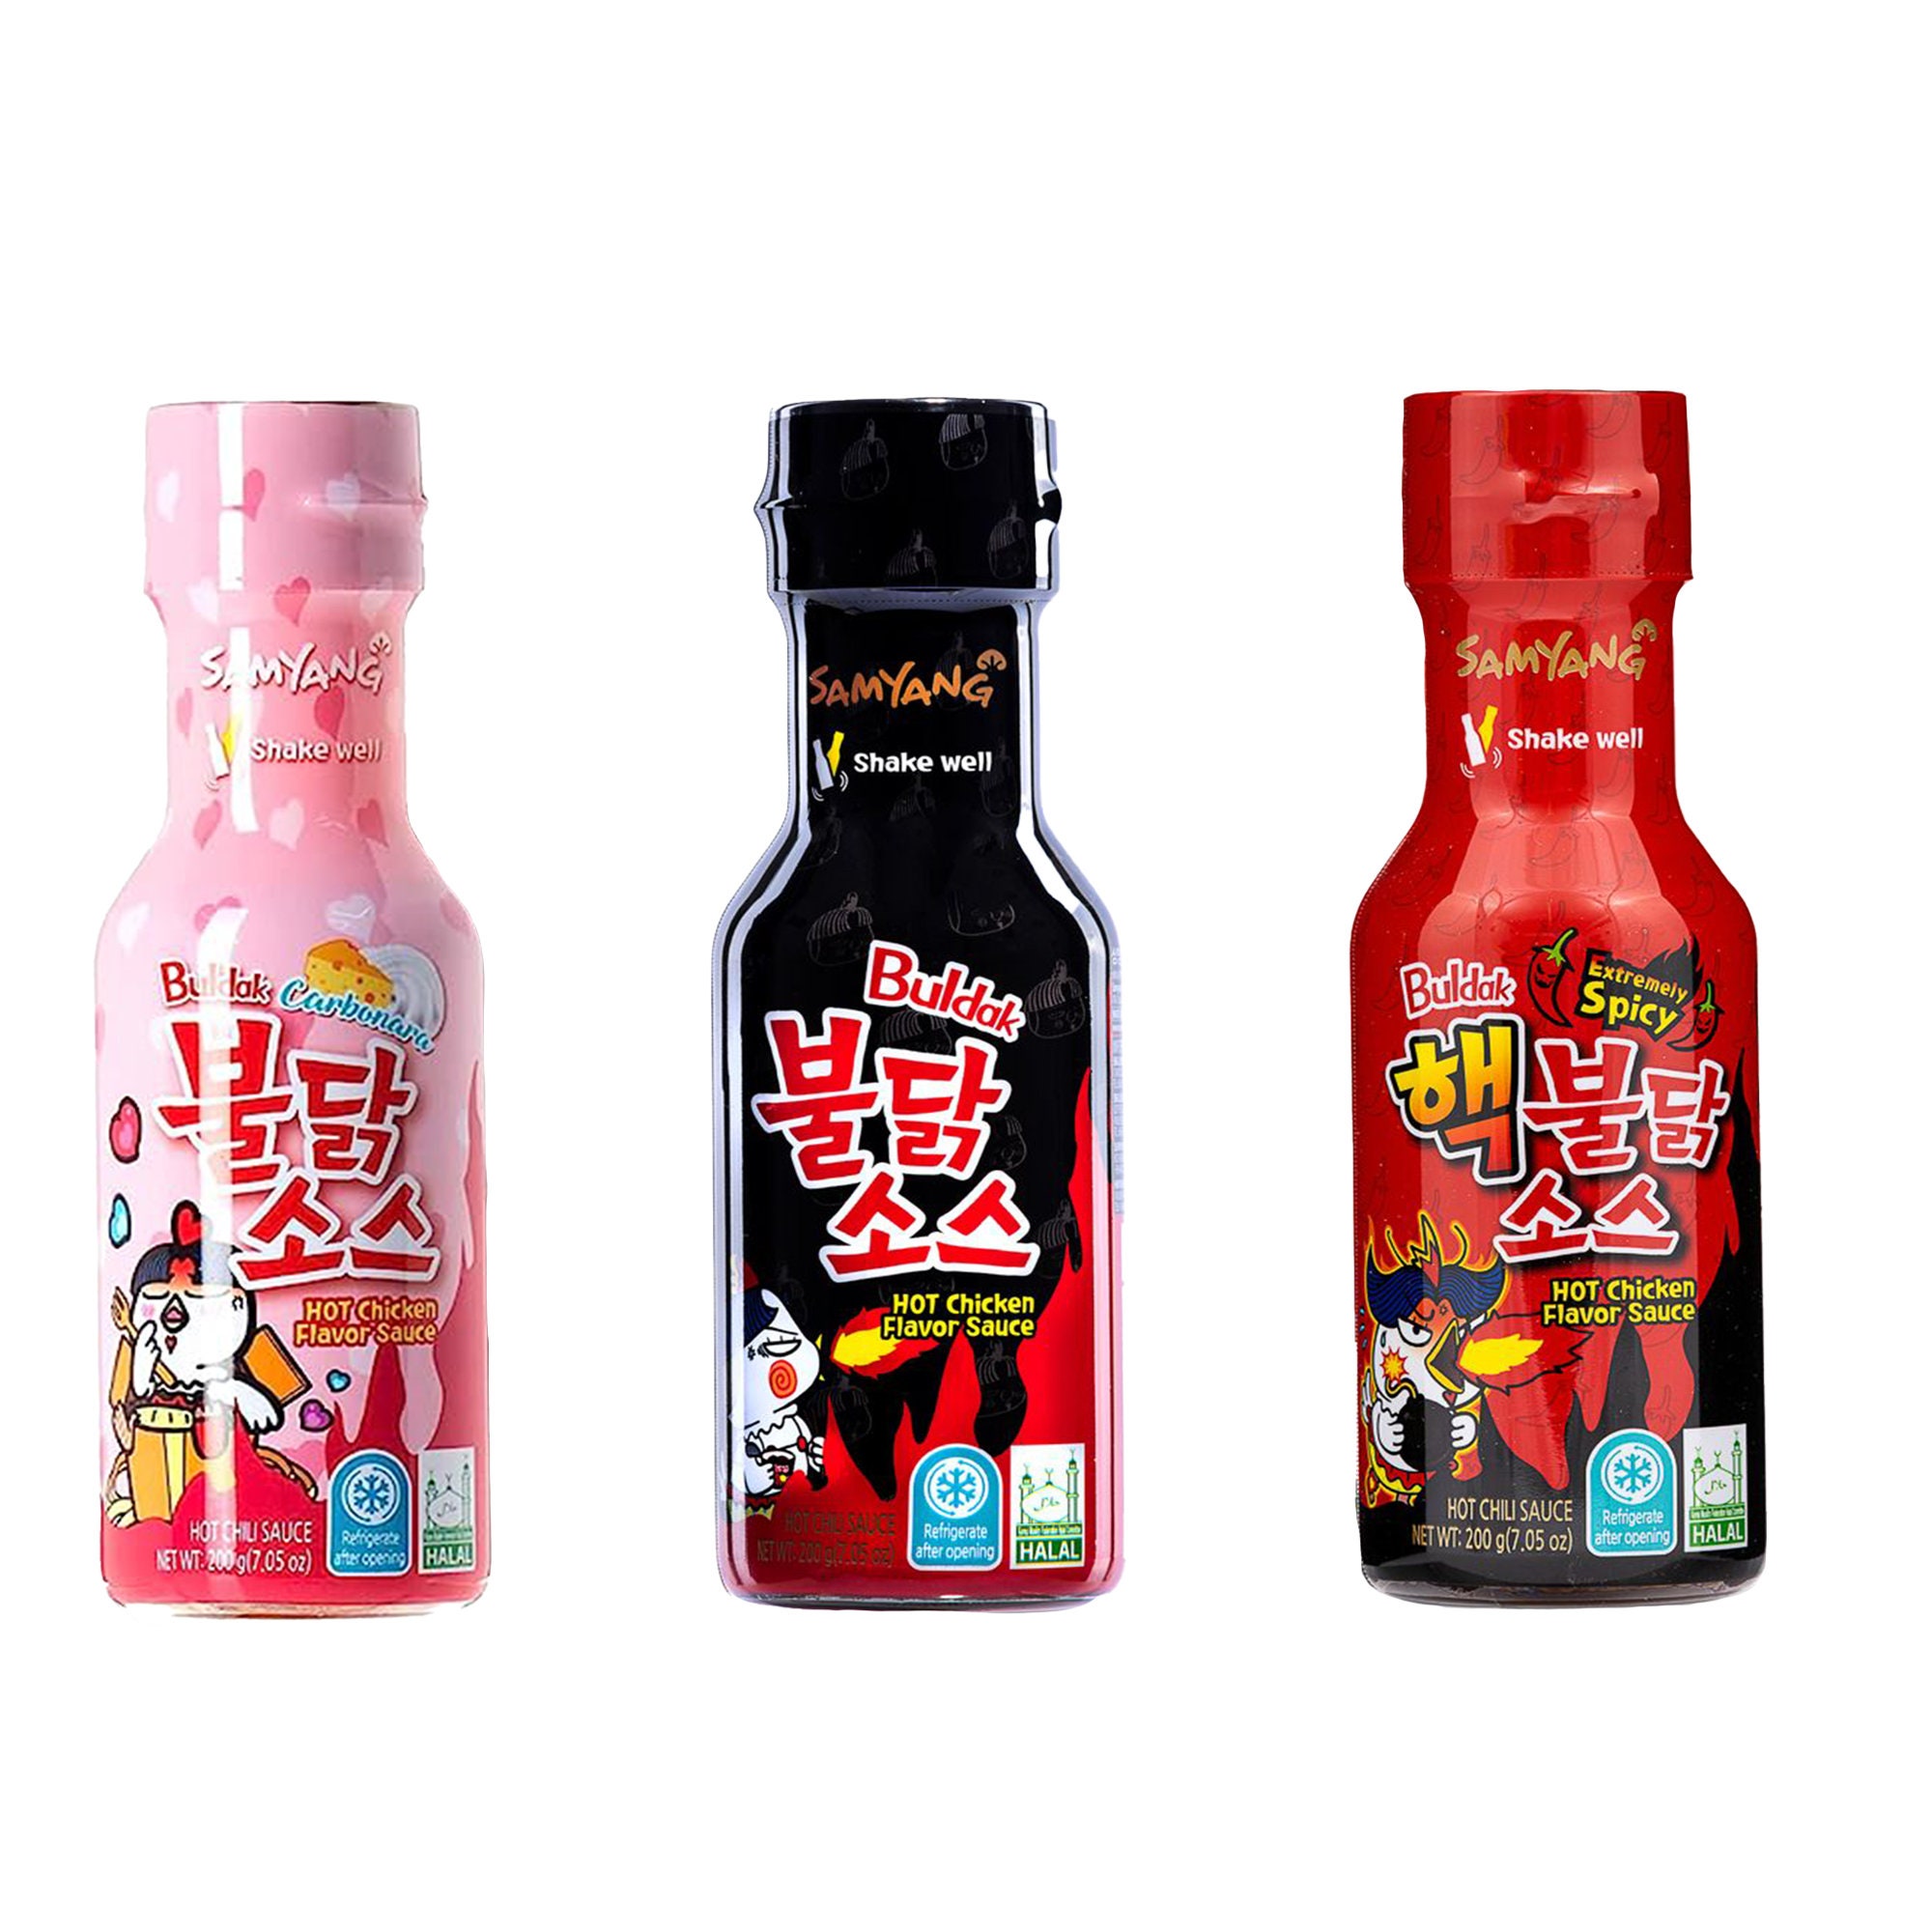 Samyang 2XSpicy Hot Chicken Buldak Sauce 200gm